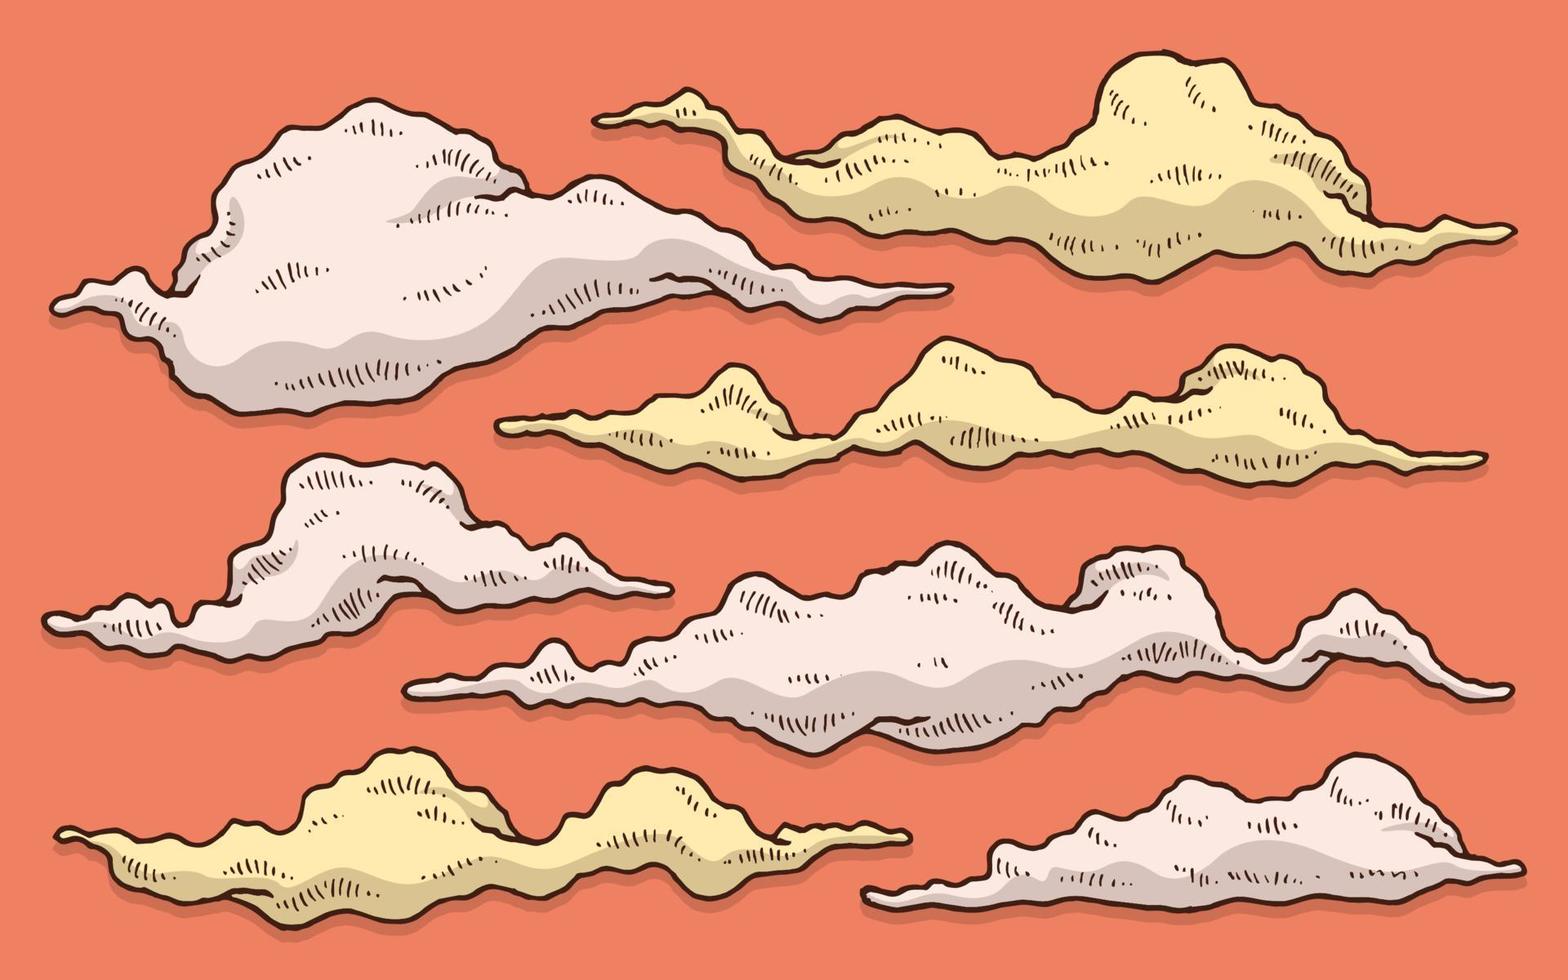 raccolta di set di tiraggio della mano di fumo e nuvola con sfondo arancione vettore